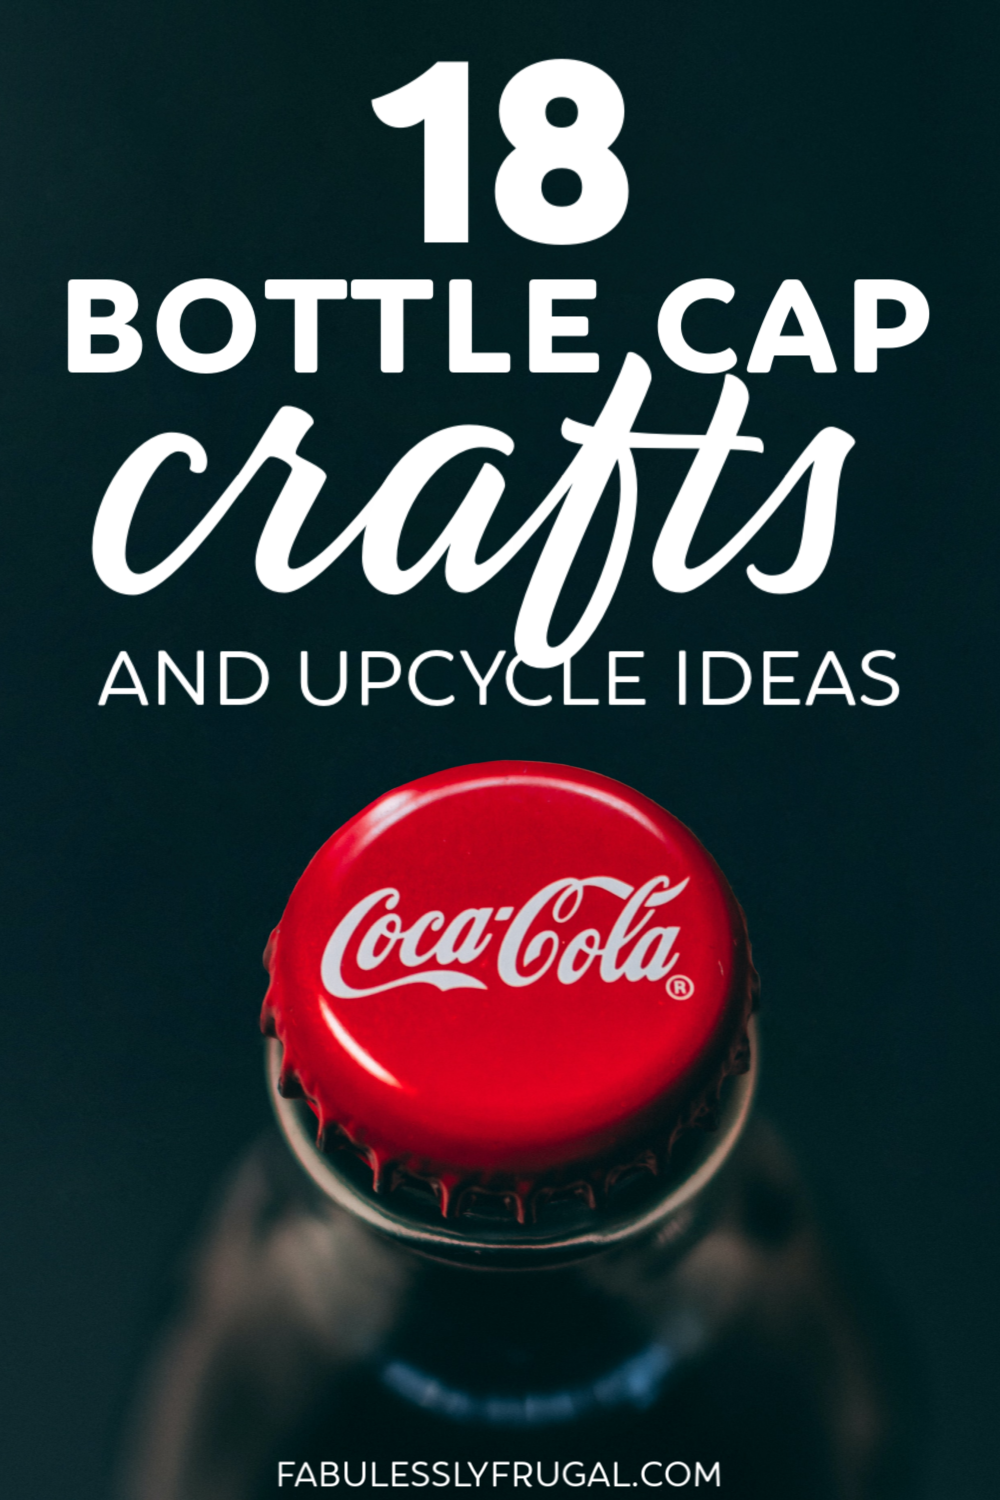 Bottle cap crafts